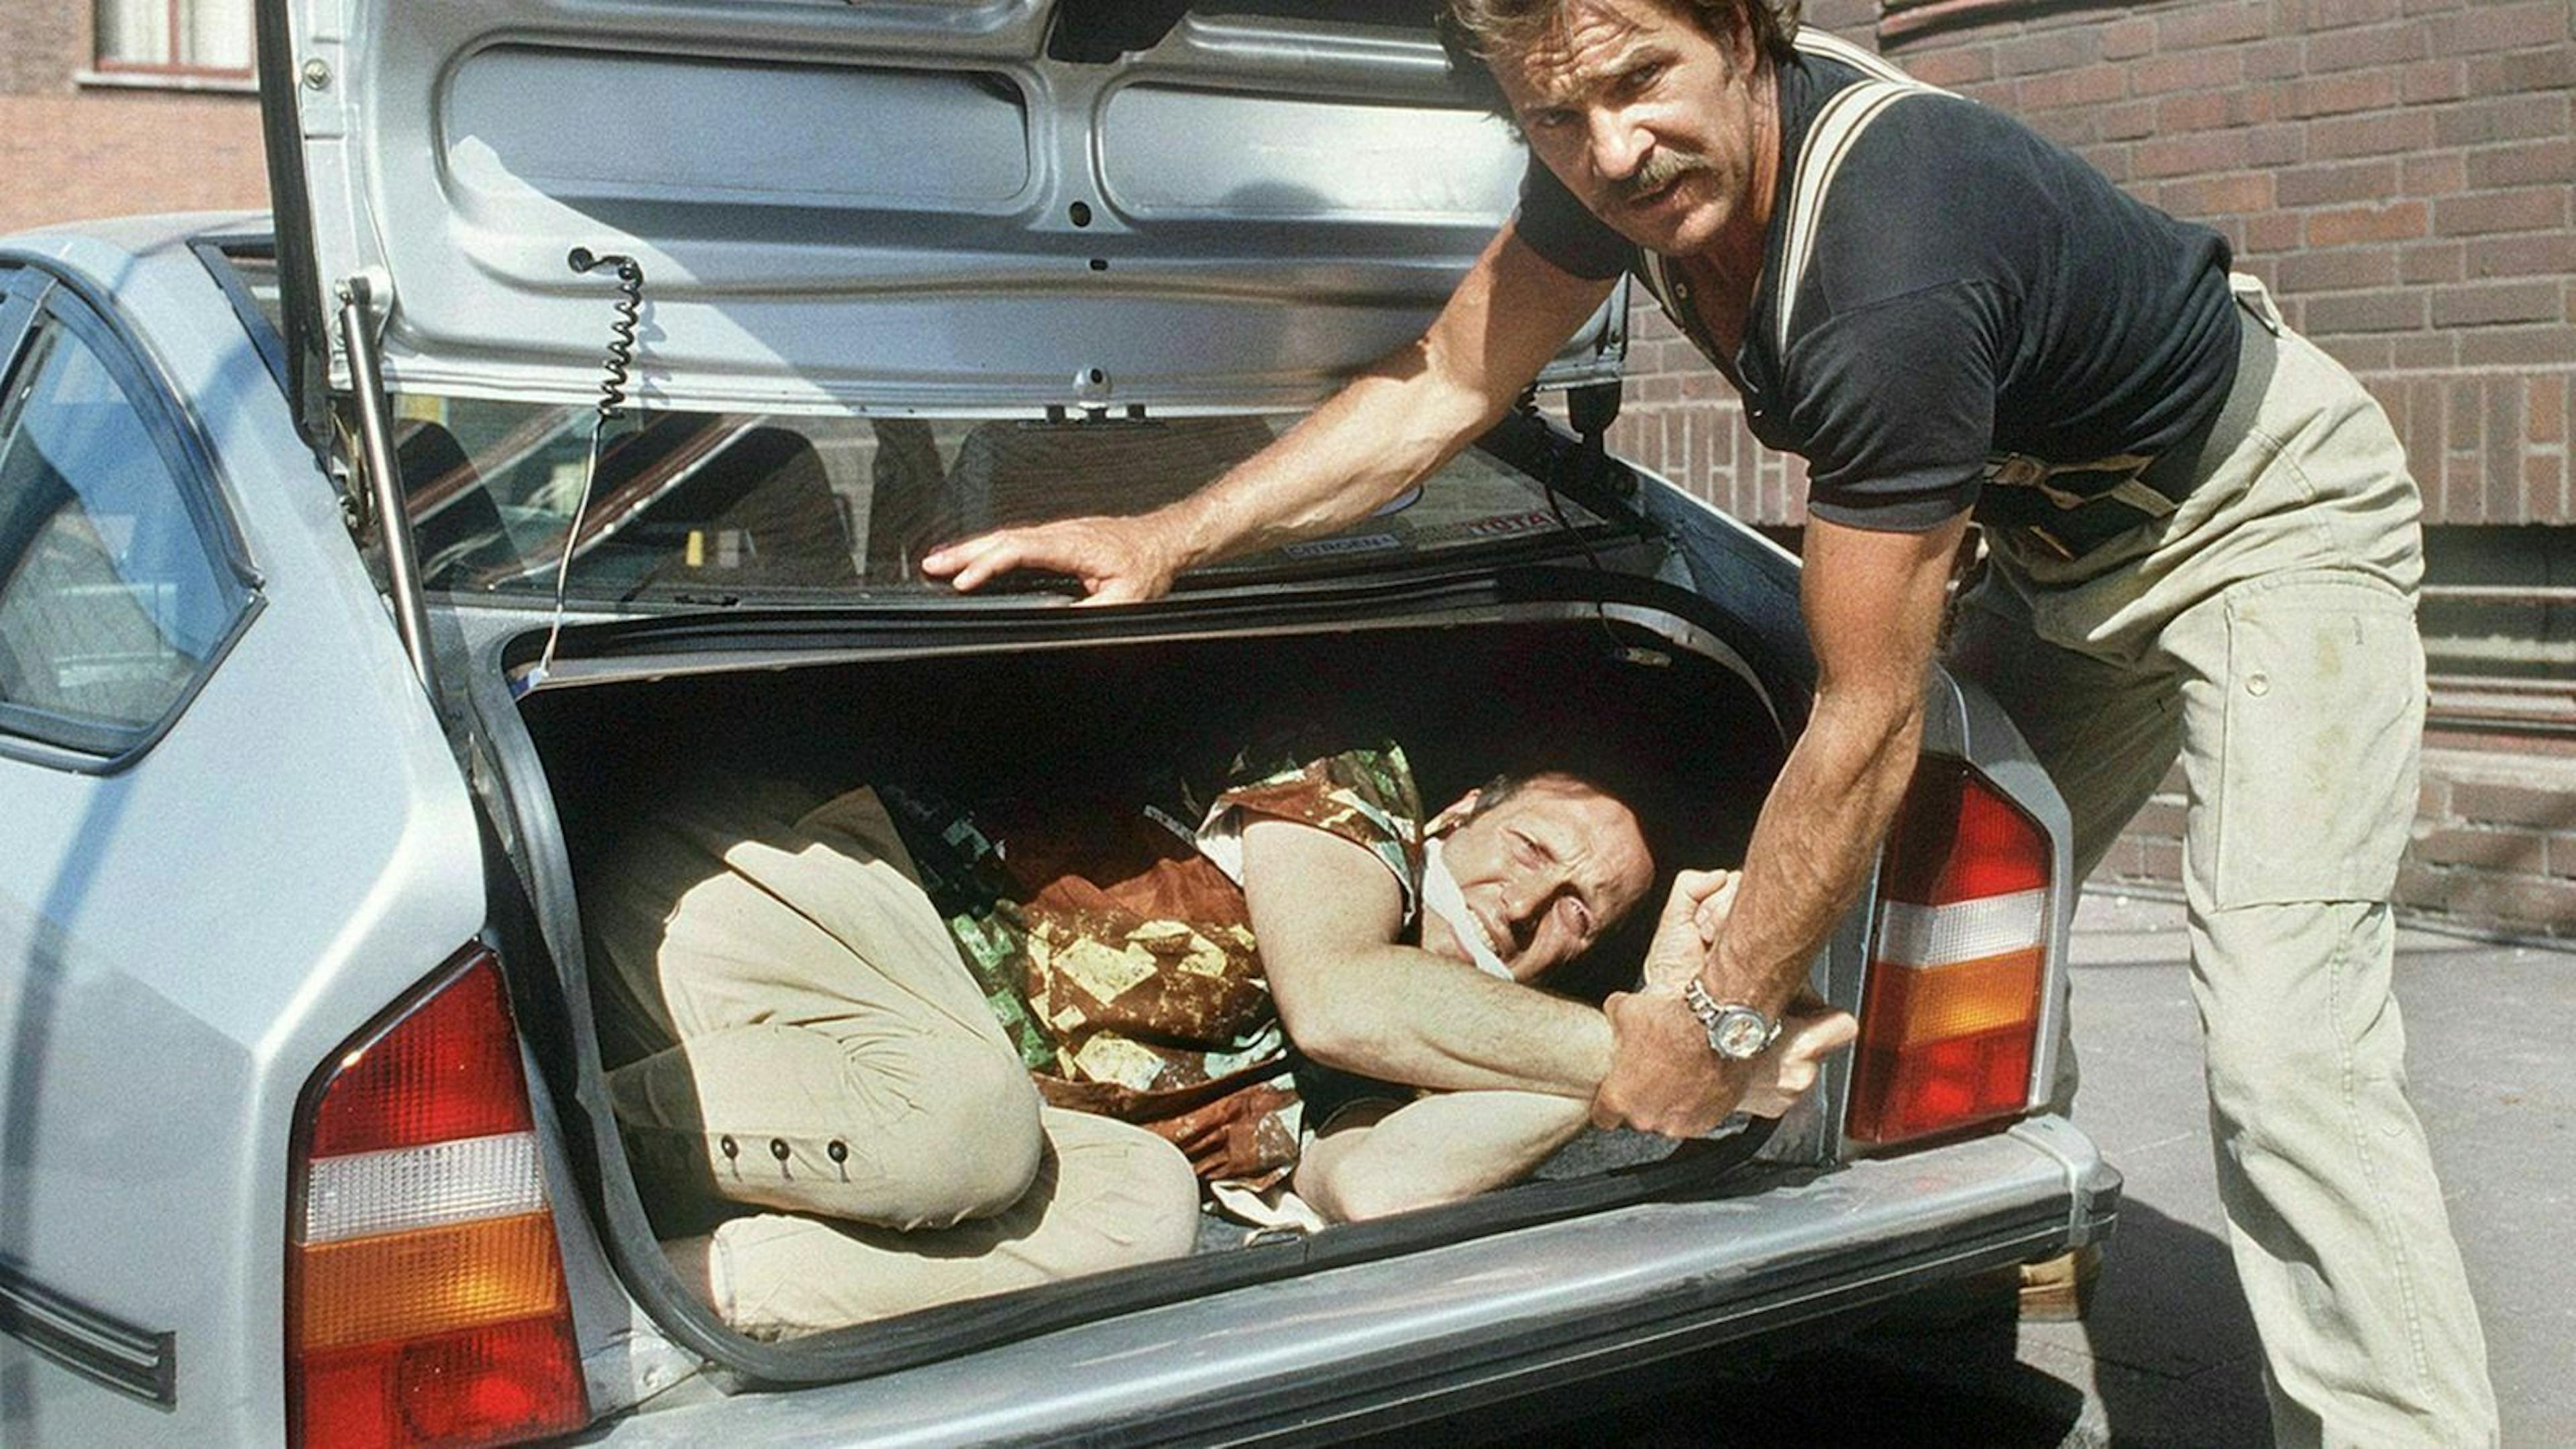 Zu sehen ist ein gefesselter Mann in einem Kofferraum